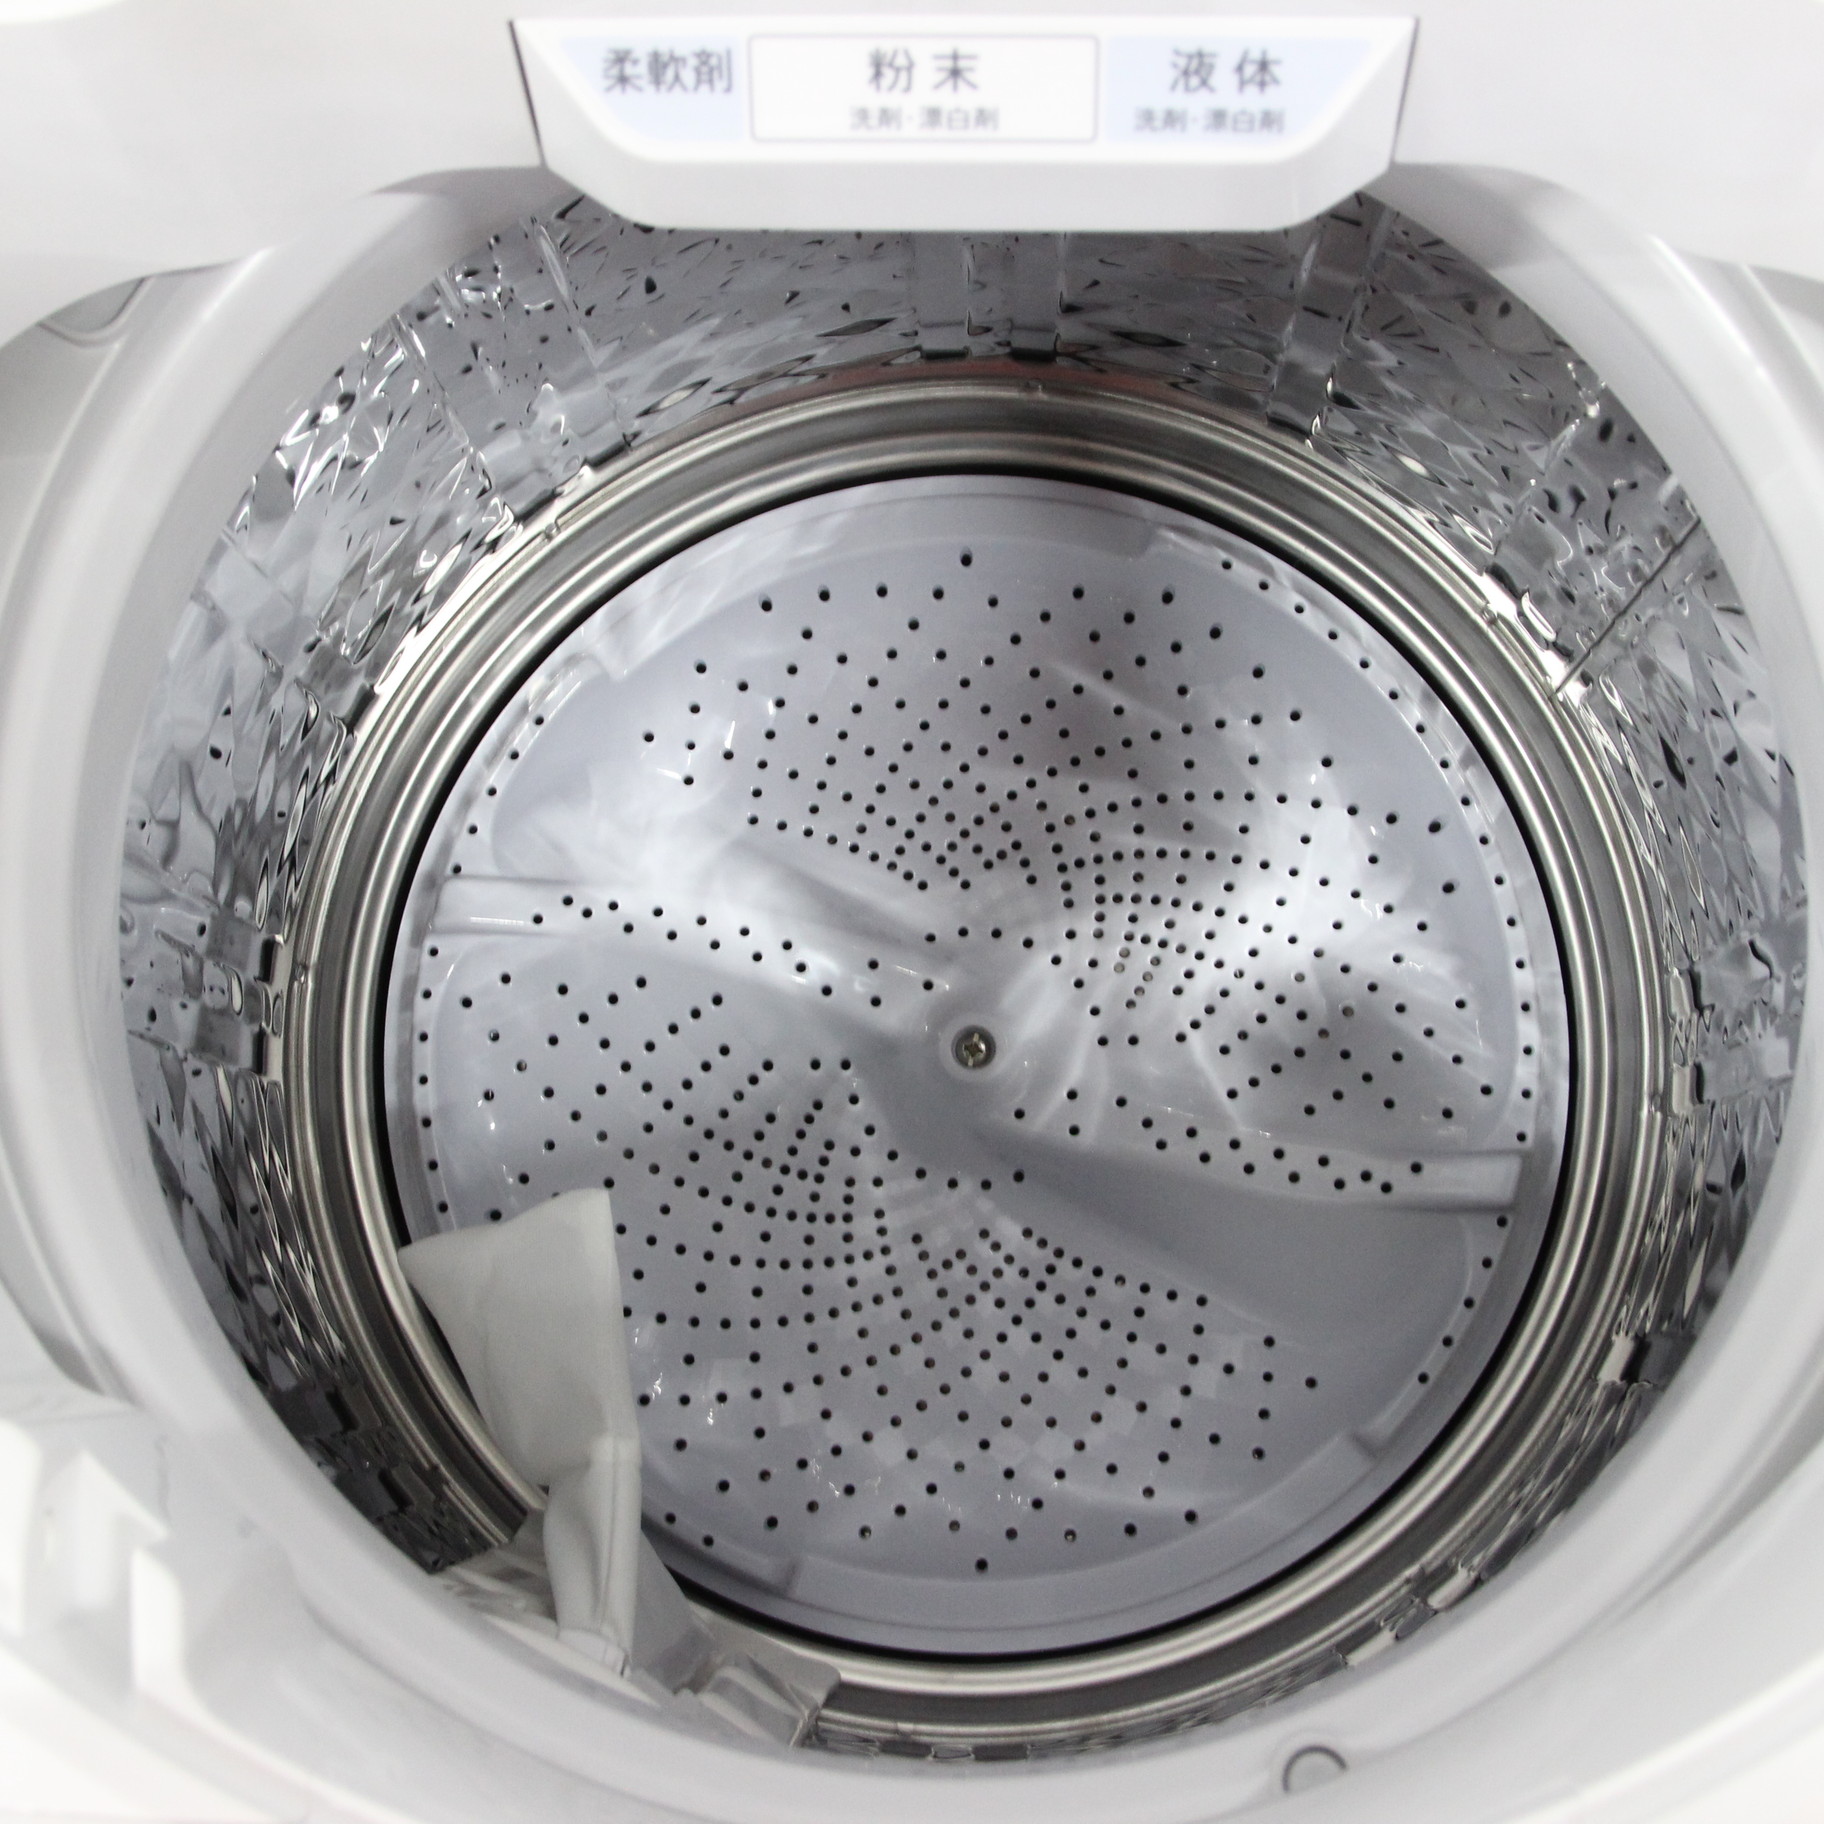 中古】〔展示品〕 全自動洗濯機 シルバー系 ES-GV8F-S ［洗濯8.0kg